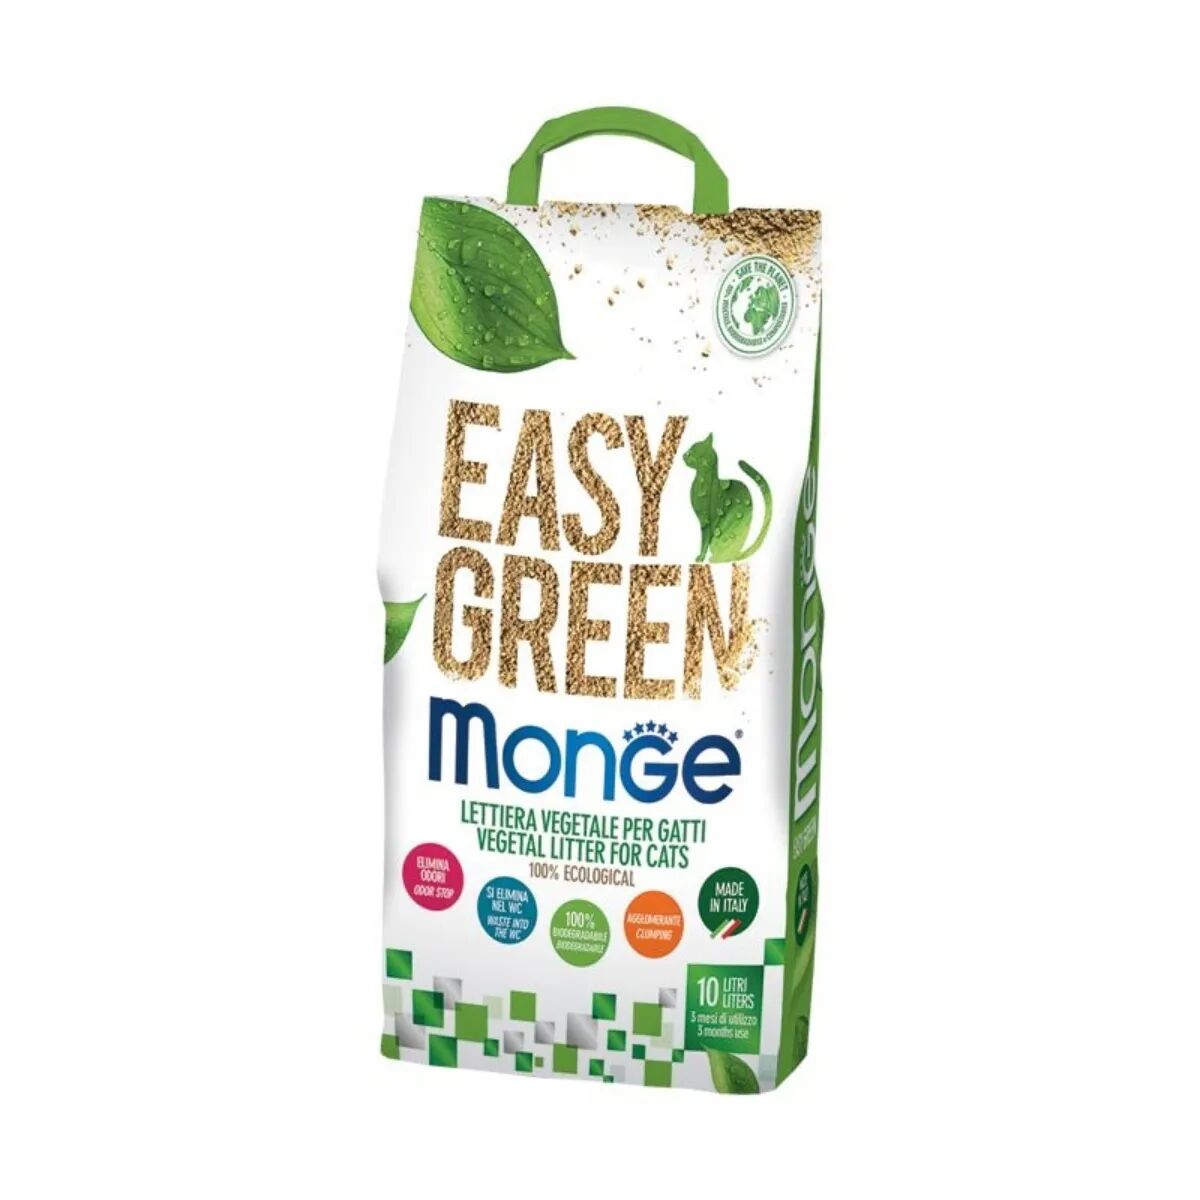 monge lettiera vegetale easy green 10l